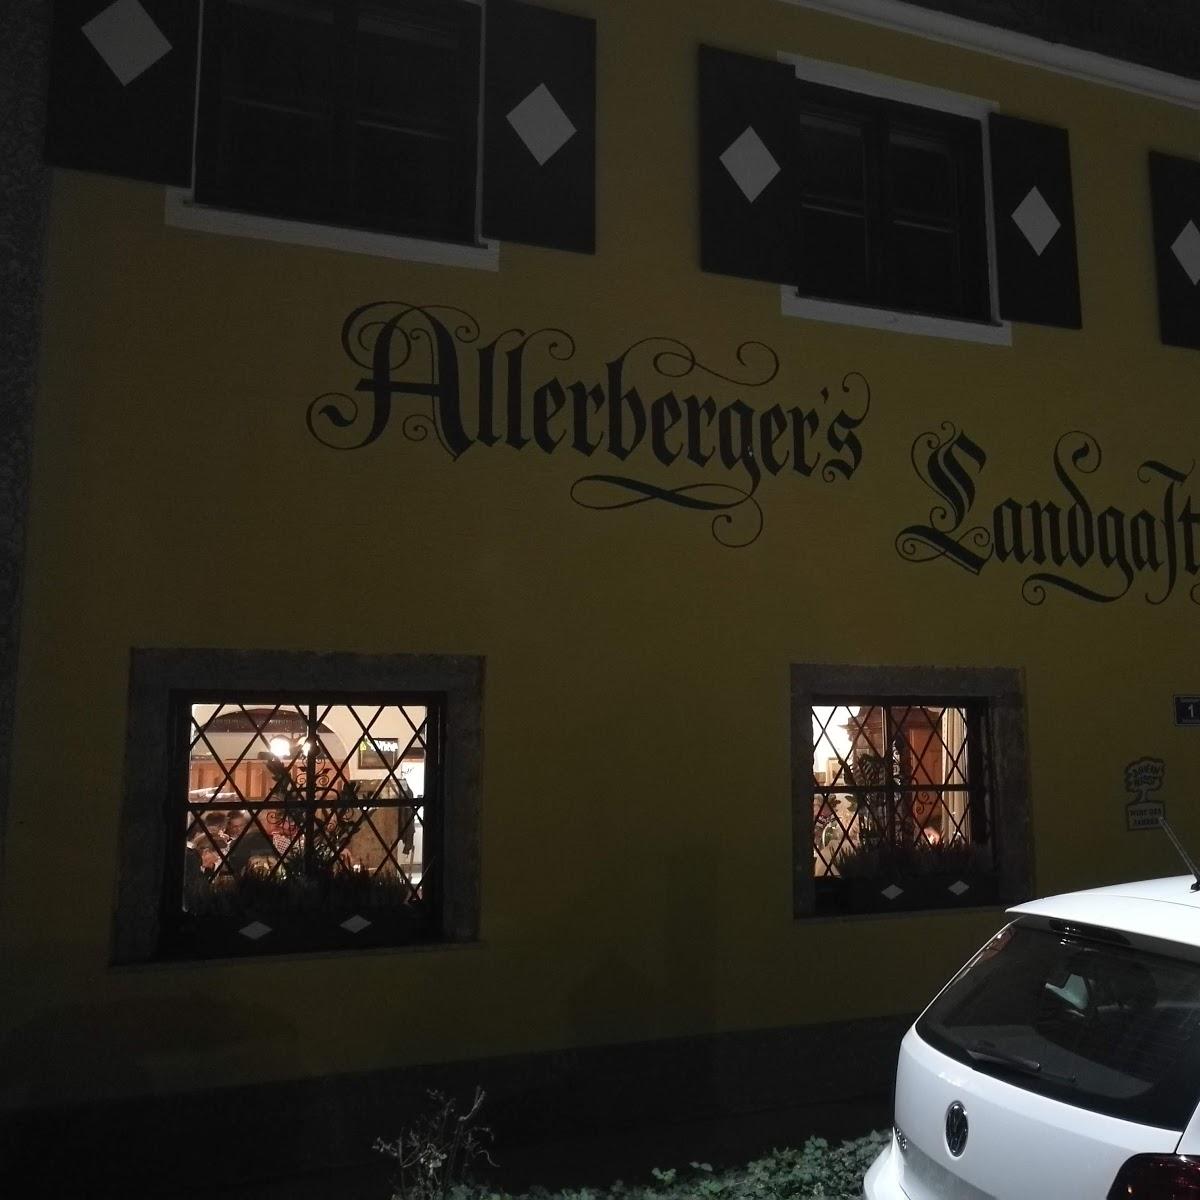 Restaurant "Landgasthof Allerberger restaurant" in Siezenheim